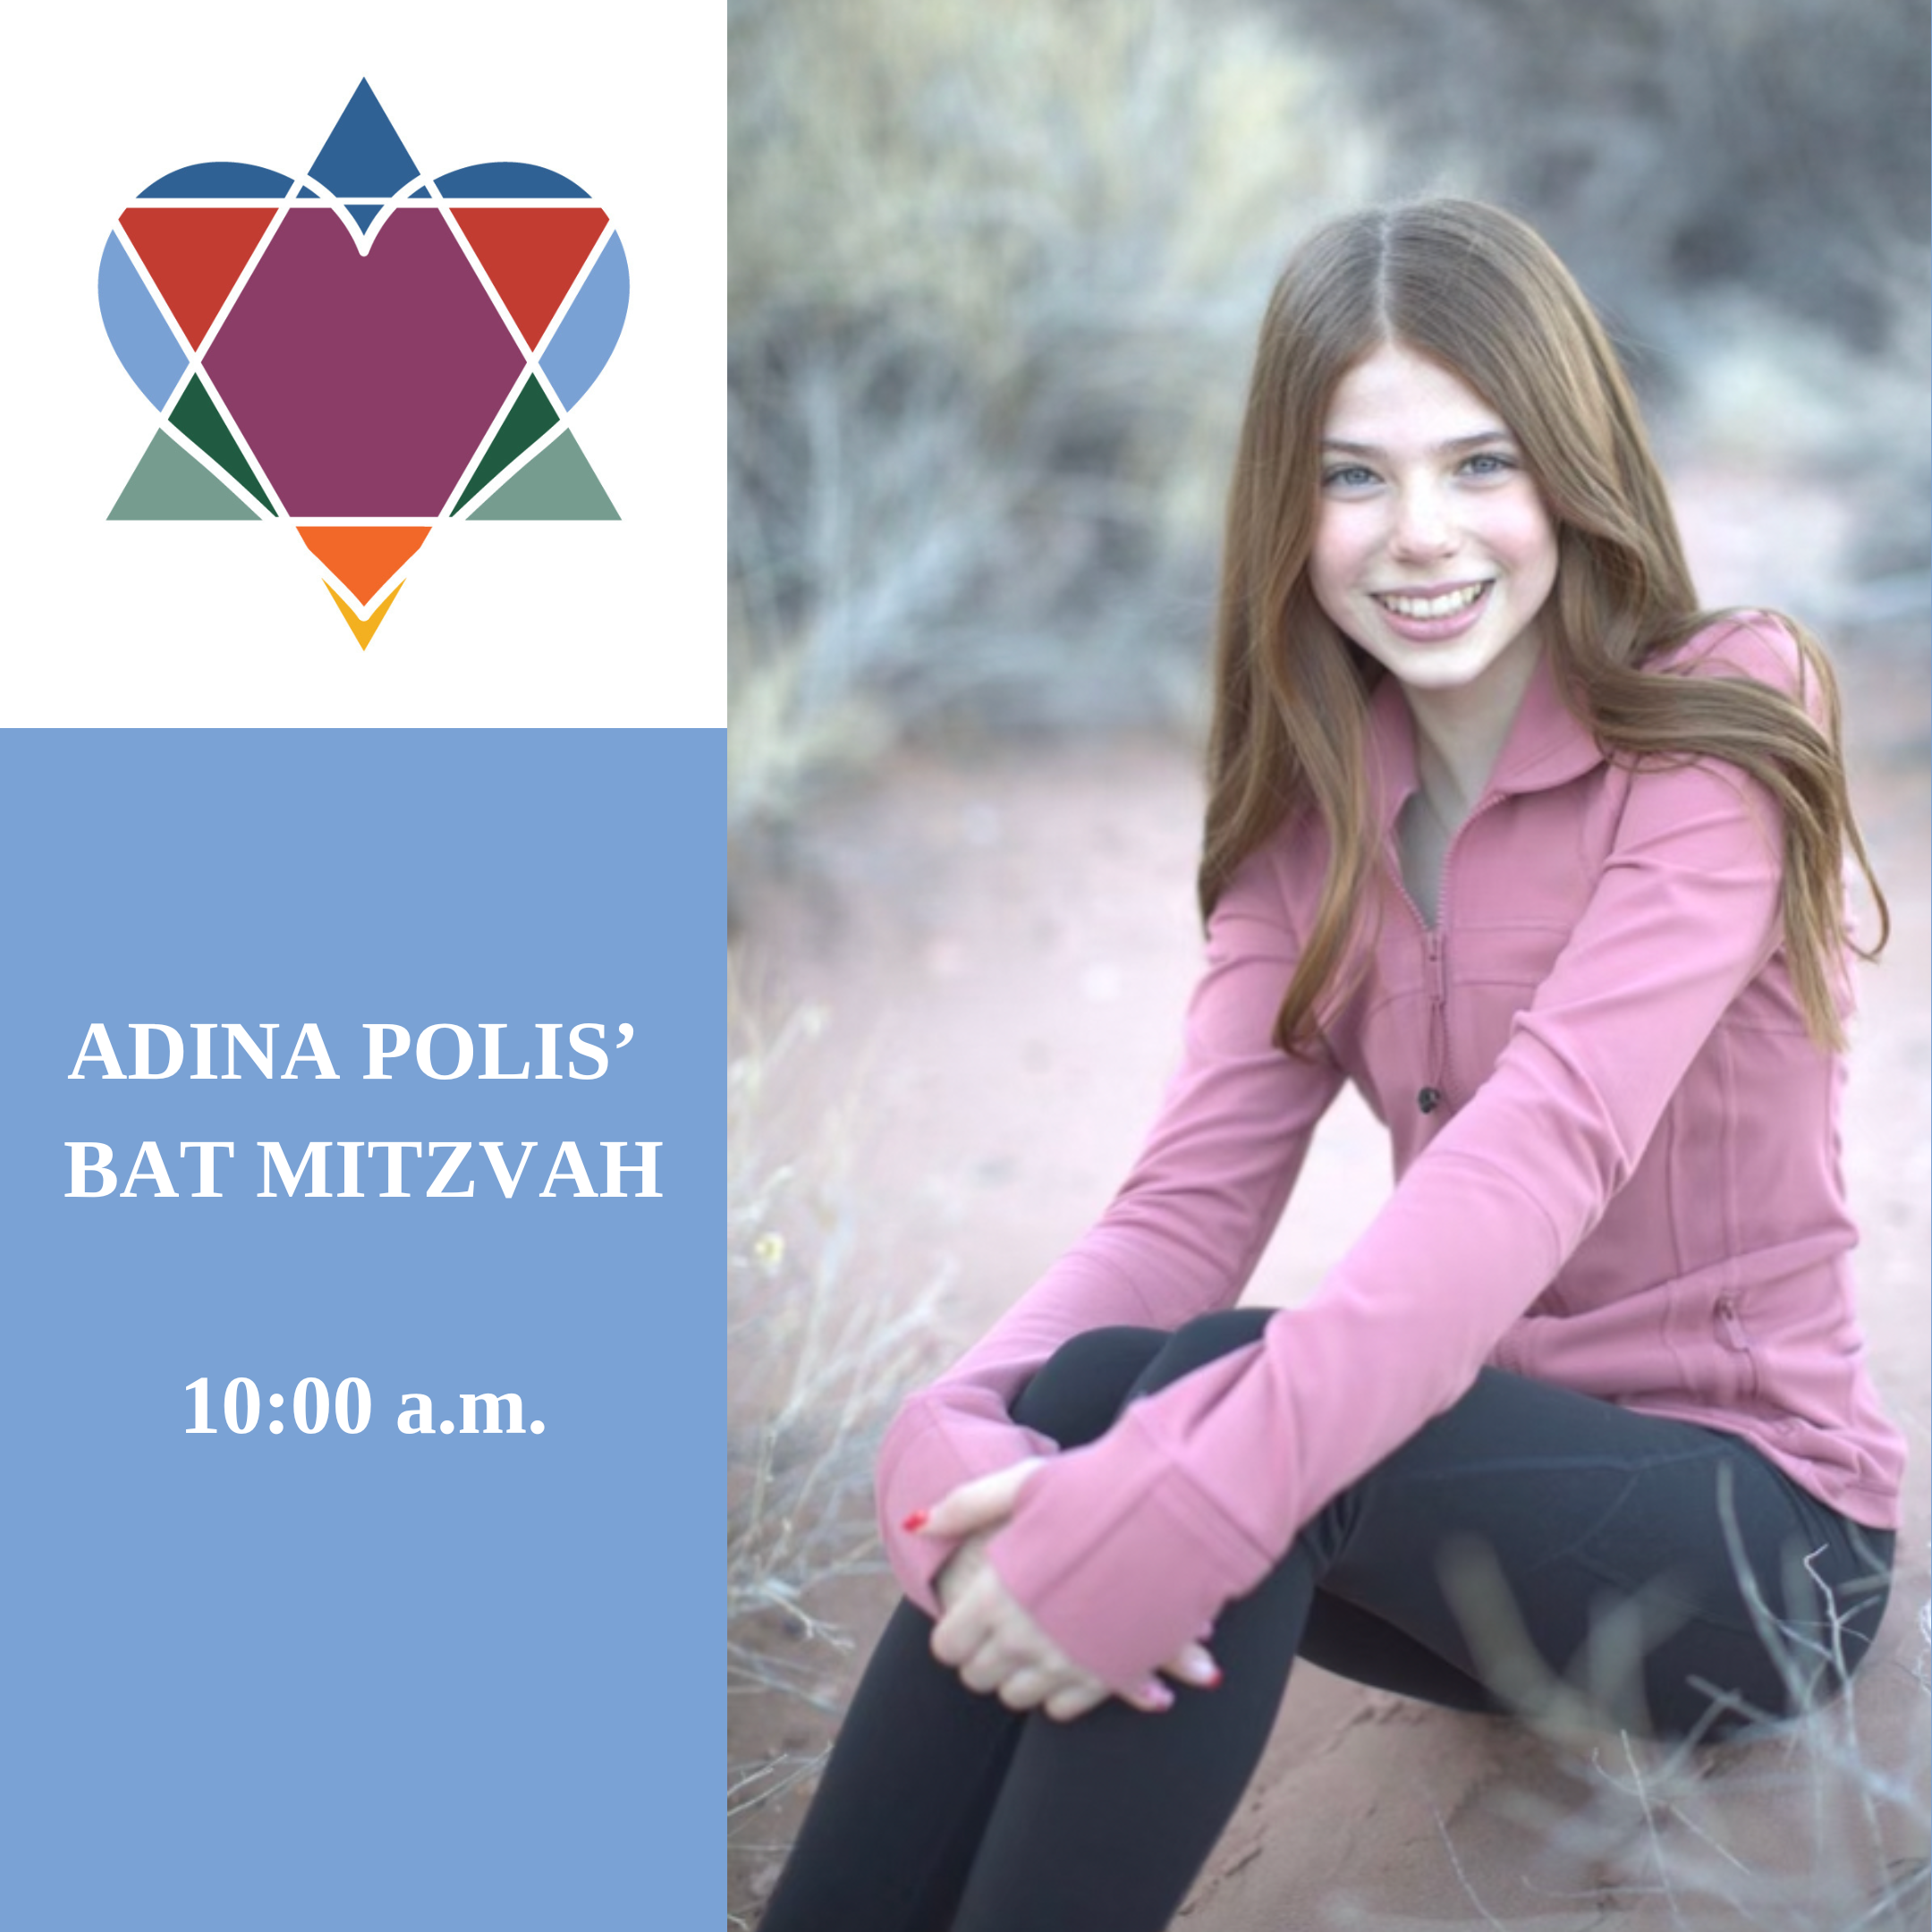 ADINA POLIS' BAT MITZVAH